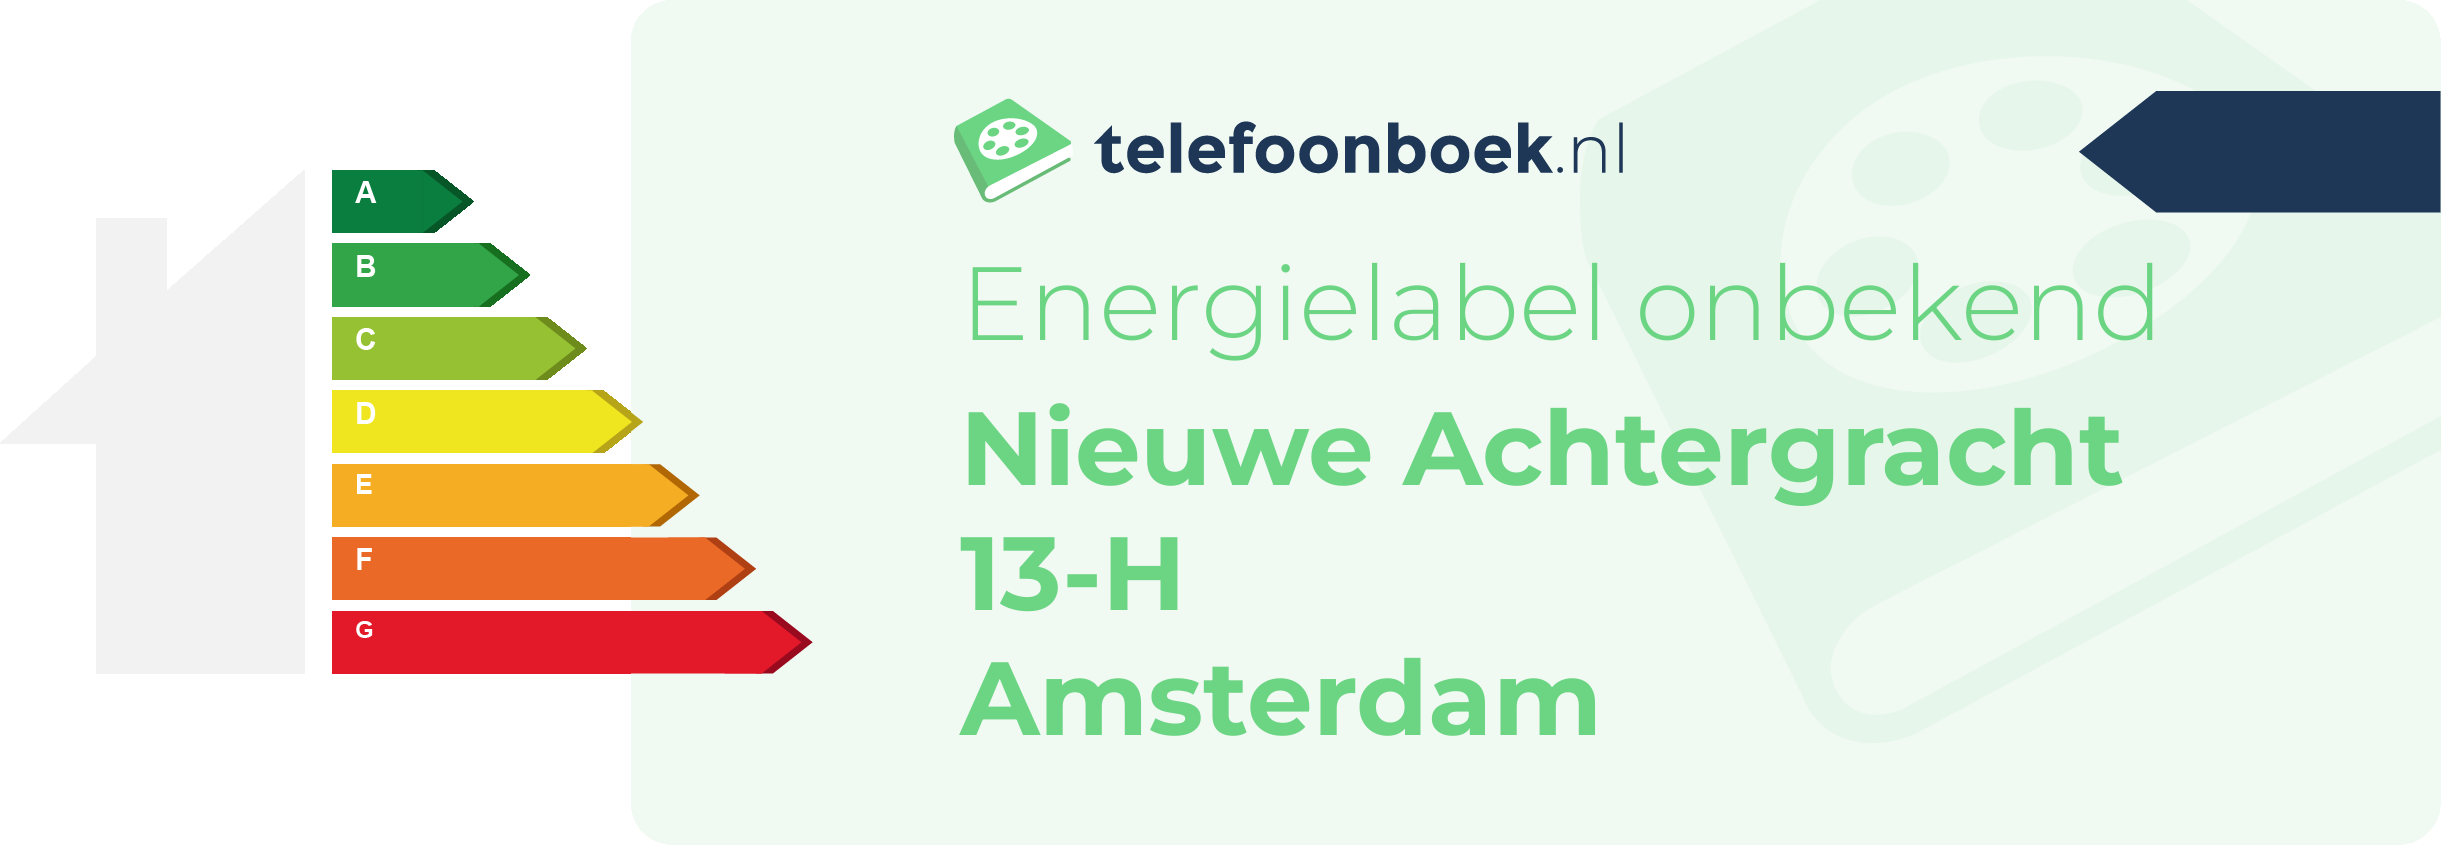 Energielabel Nieuwe Achtergracht 13-H Amsterdam